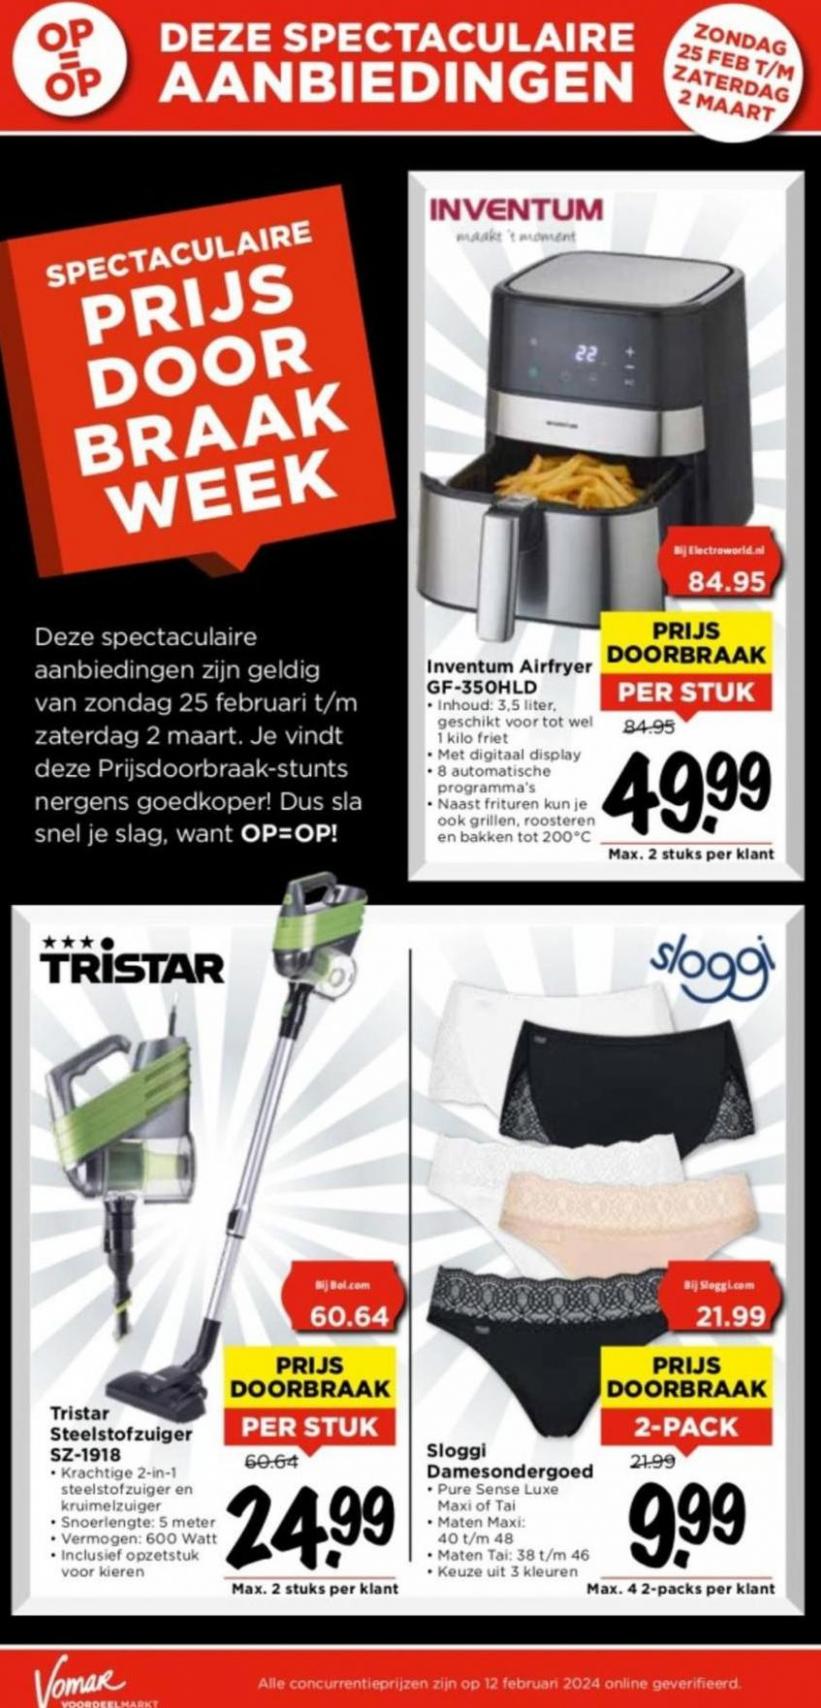 Spectaculaire Prijsdoorbraak Week. Page 4